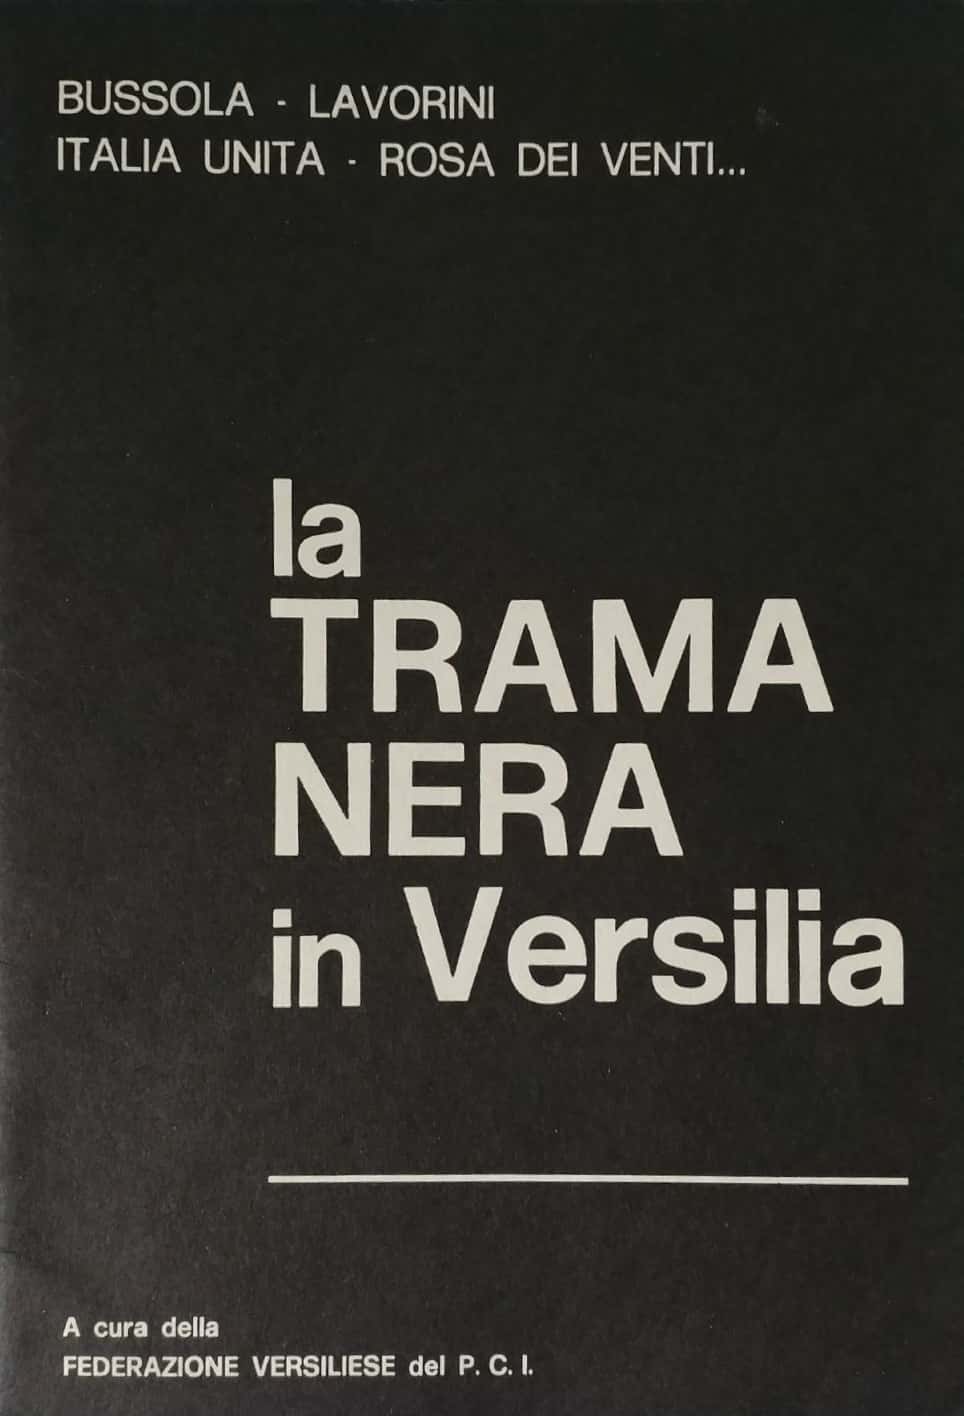 Un rarissimo opuscolo sul “lato oscuro” della Versilia